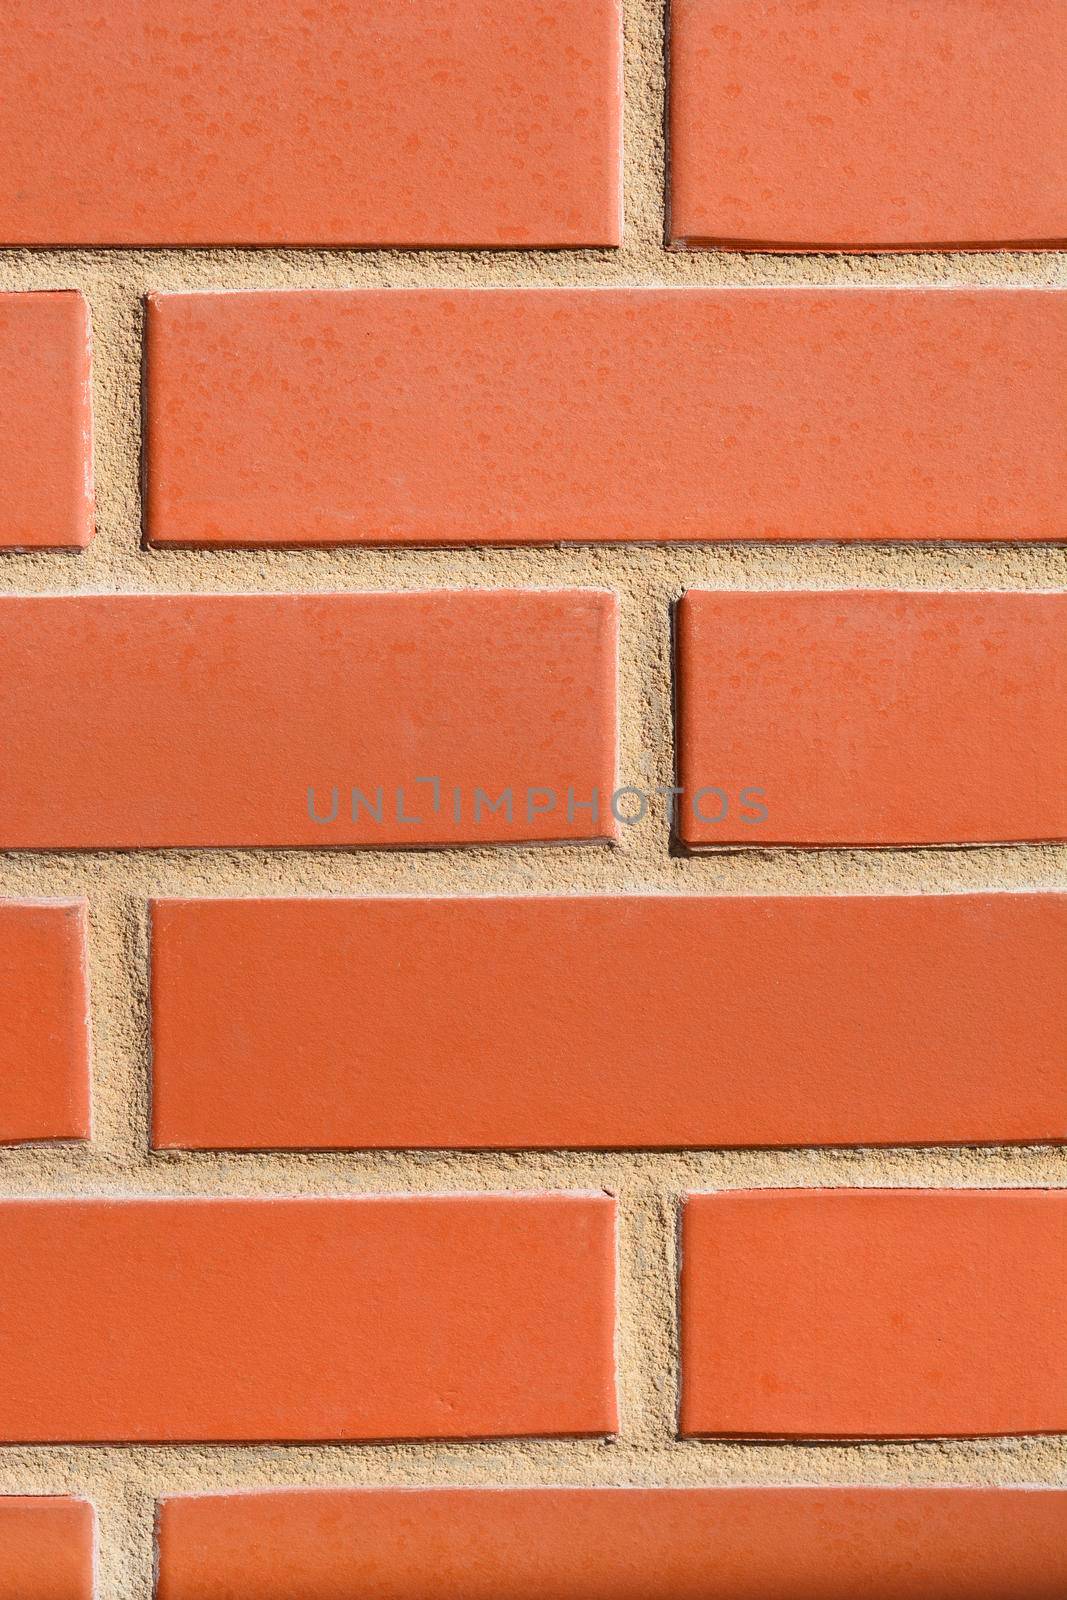 Decorative brick wall by nahhan